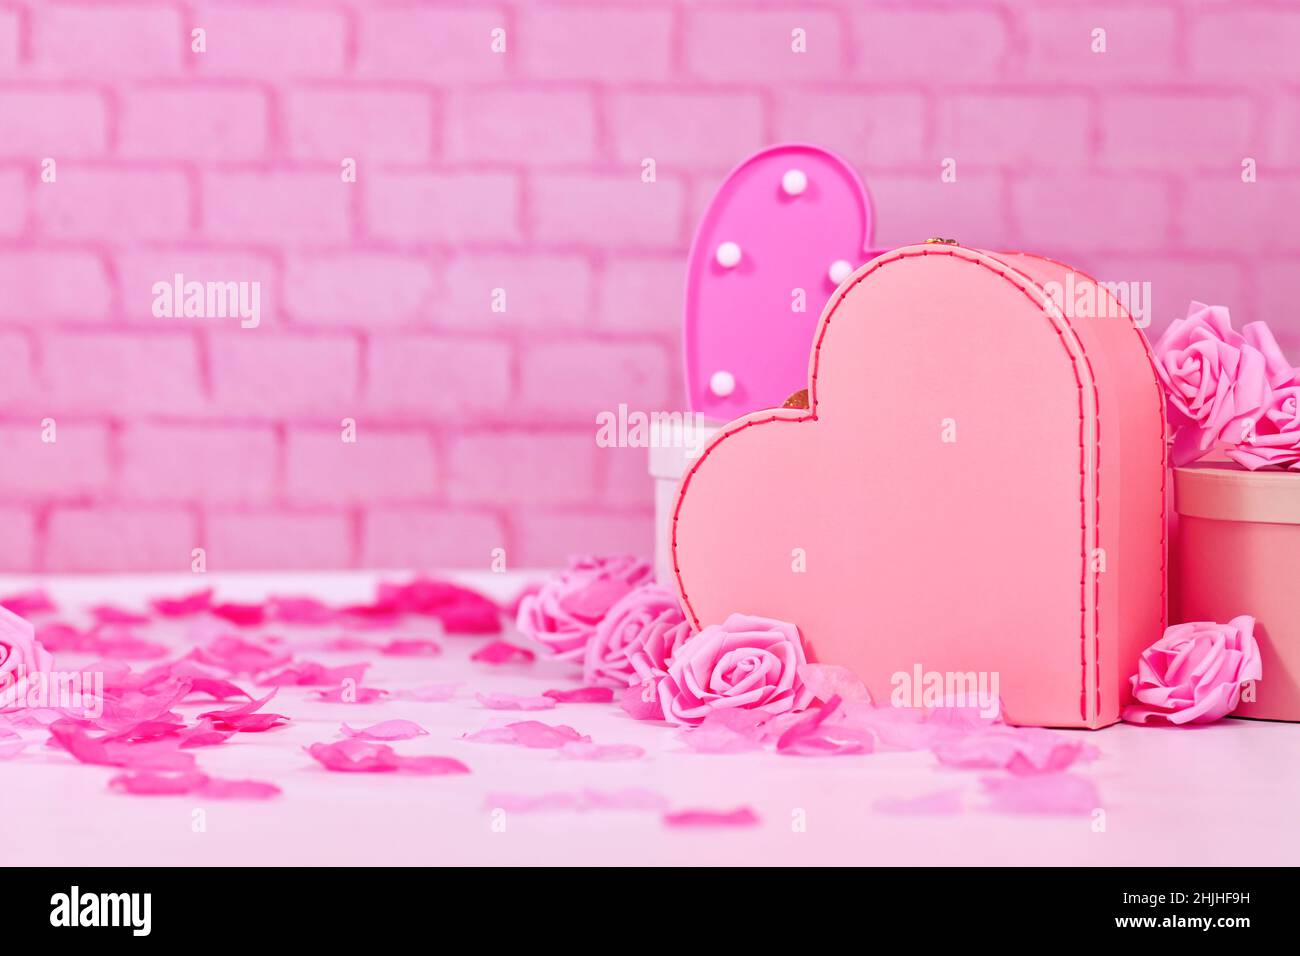 Composition de la Saint-Valentin avec roses roses roses, pétales de fleurs, boîte cadeau en forme de coeur devant le mur en brique avec espace pour les copies Banque D'Images